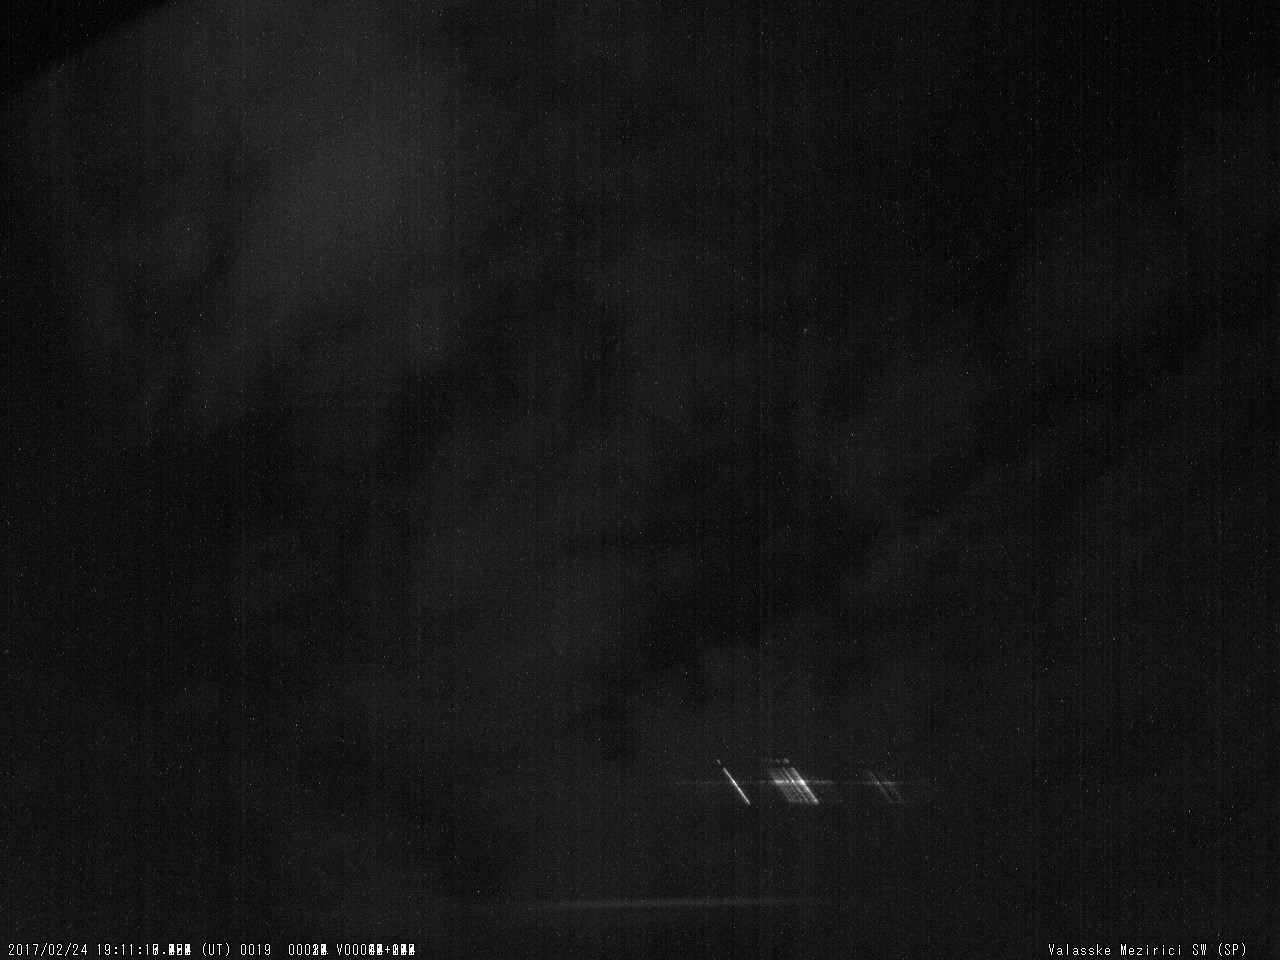 Fig. 9: Spectrum of bright meteor 20170224_191117, SPNE spectrograph. Author: Valašské Meziříčí Observatory